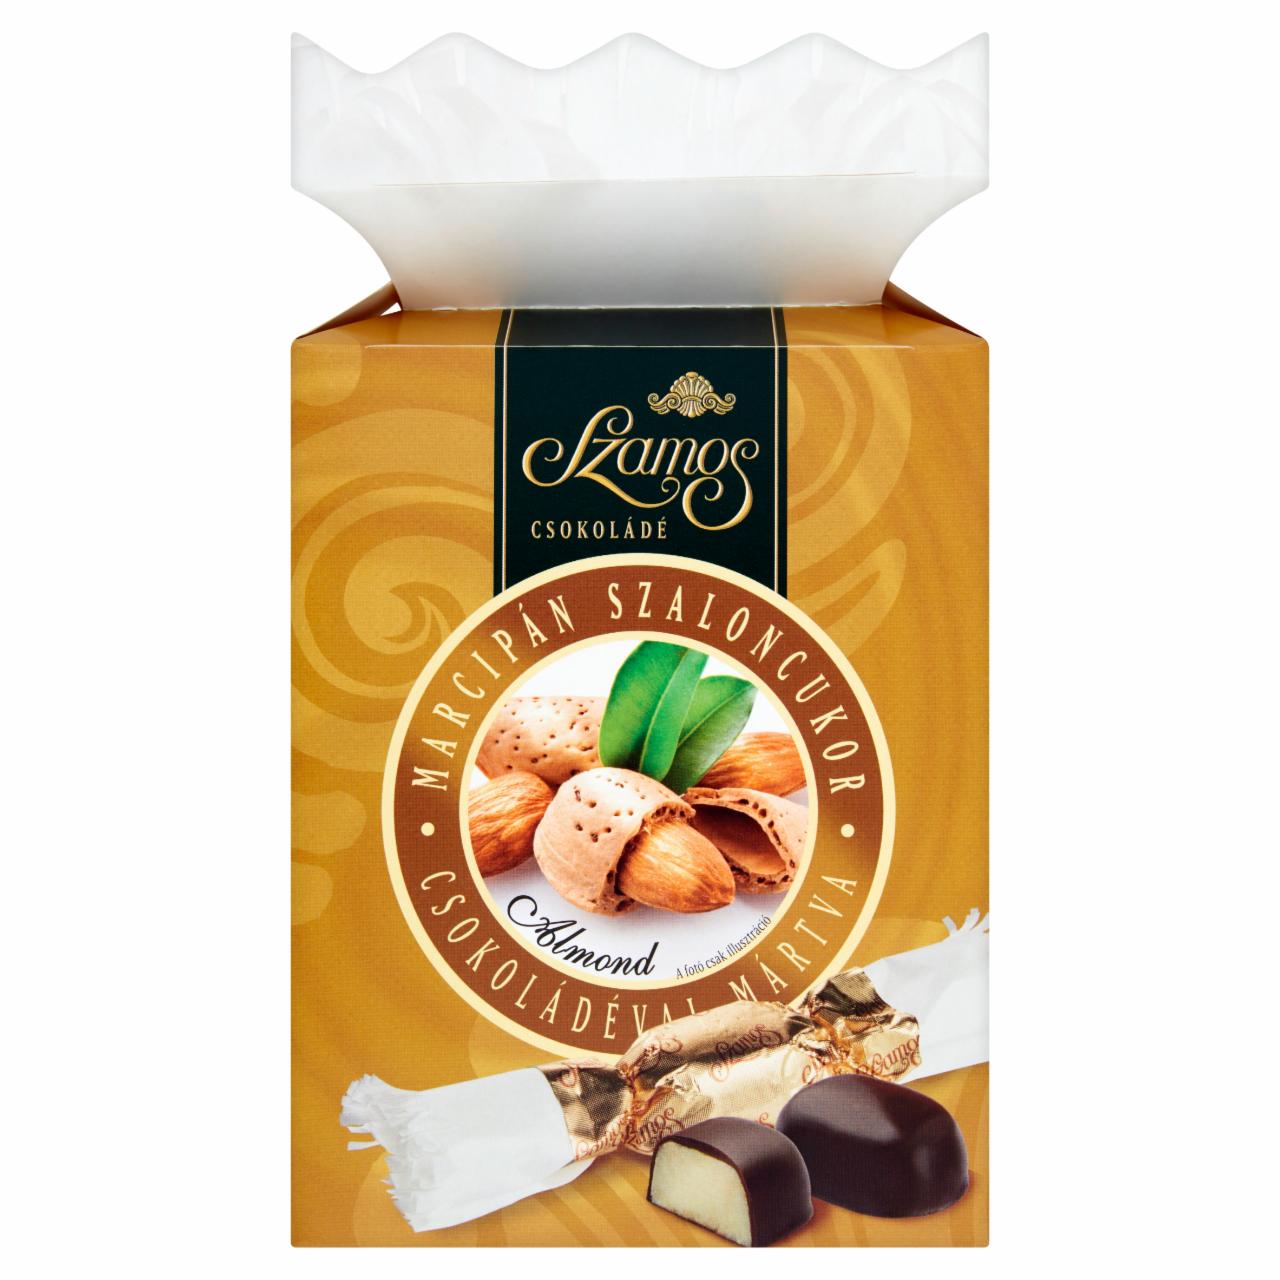 Képek - Szamos marcipán szaloncukor csokoládéval mártva 300 g